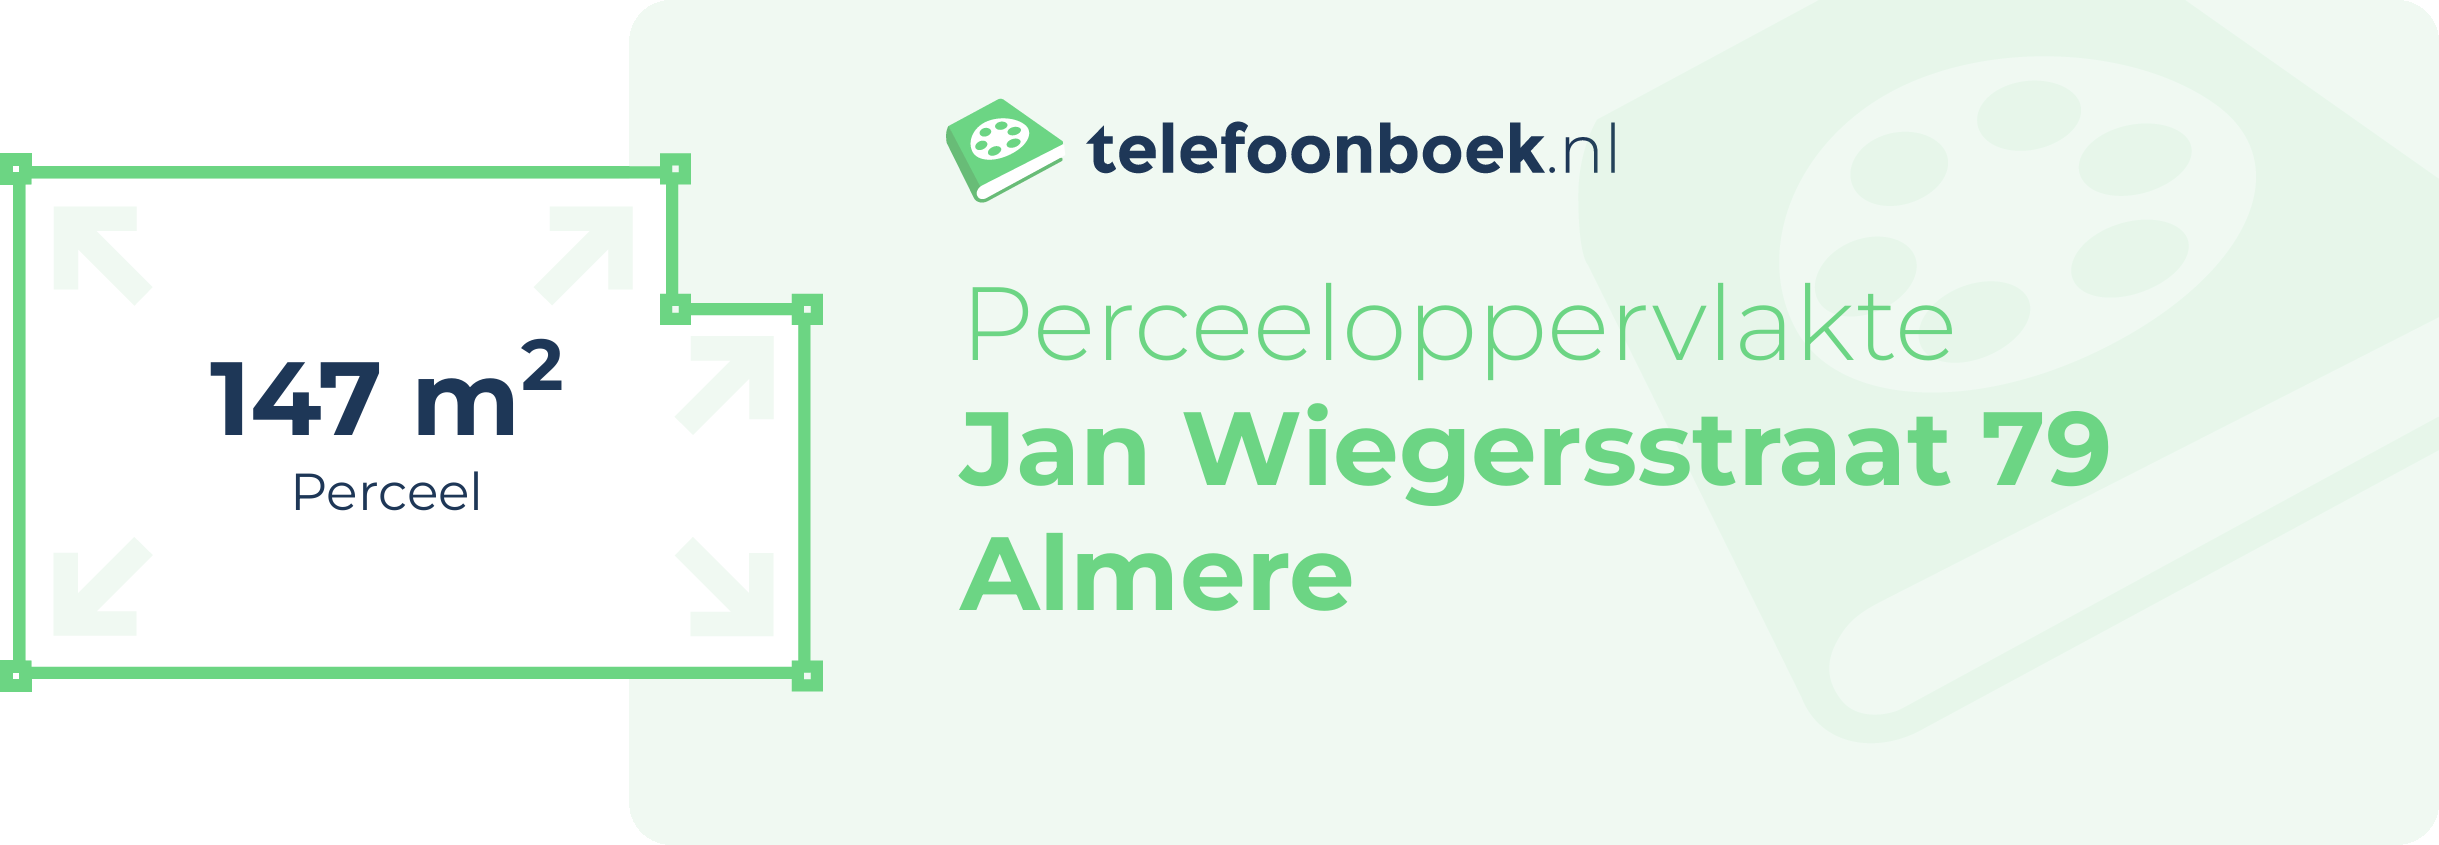 Perceeloppervlakte Jan Wiegersstraat 79 Almere